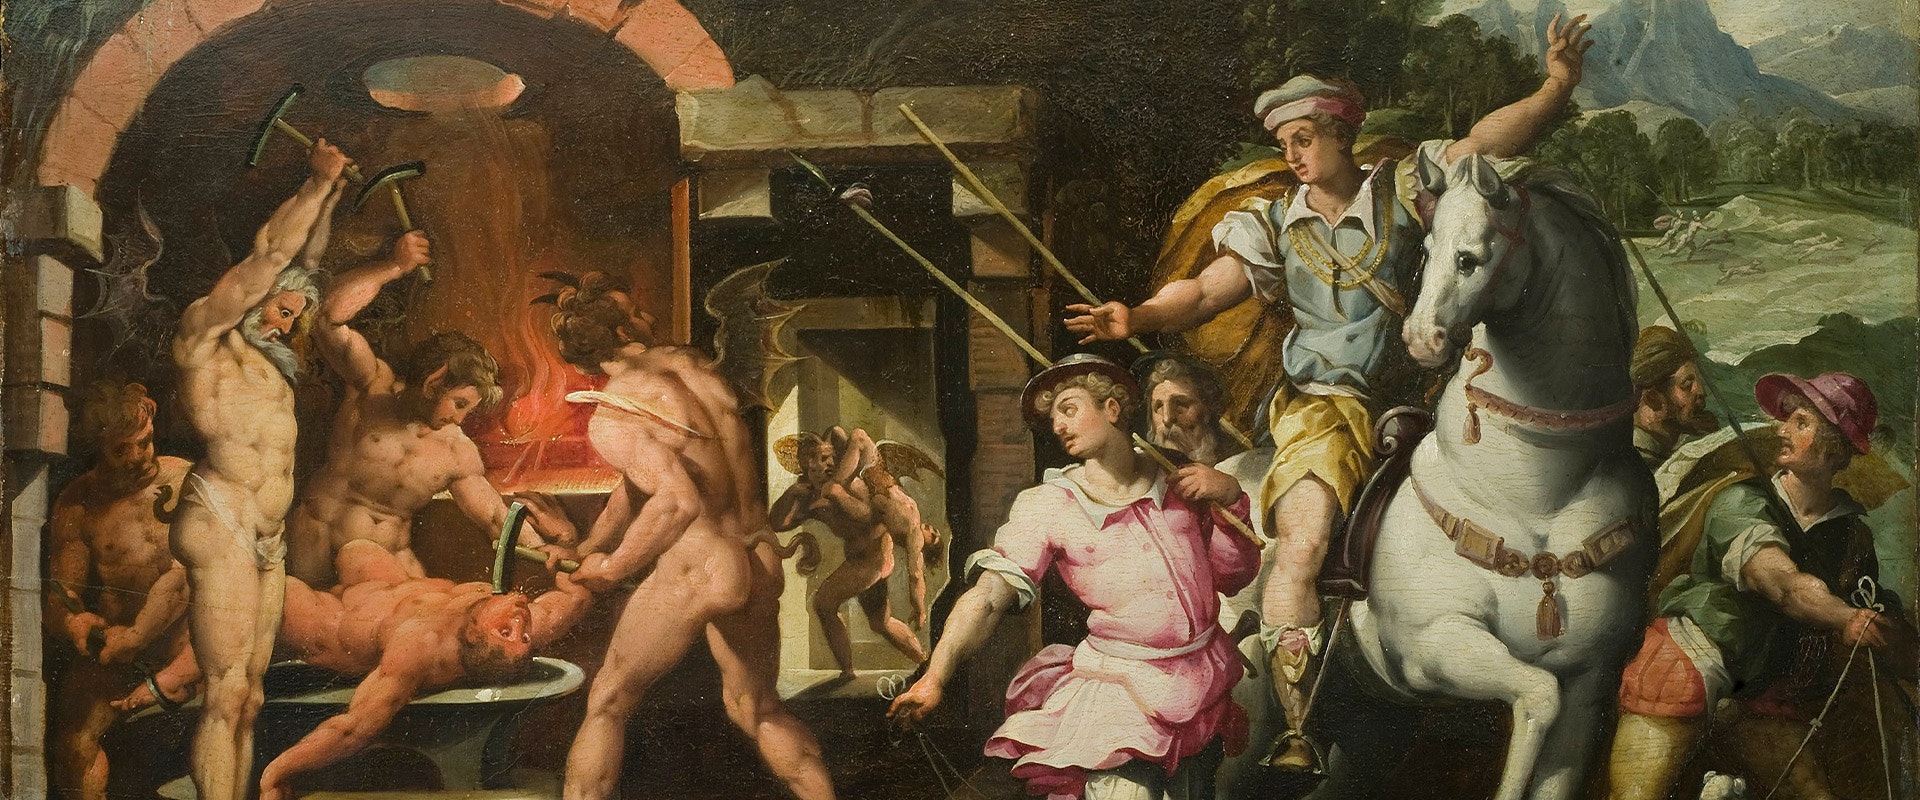 Vasari, the Uffizi and the Duke